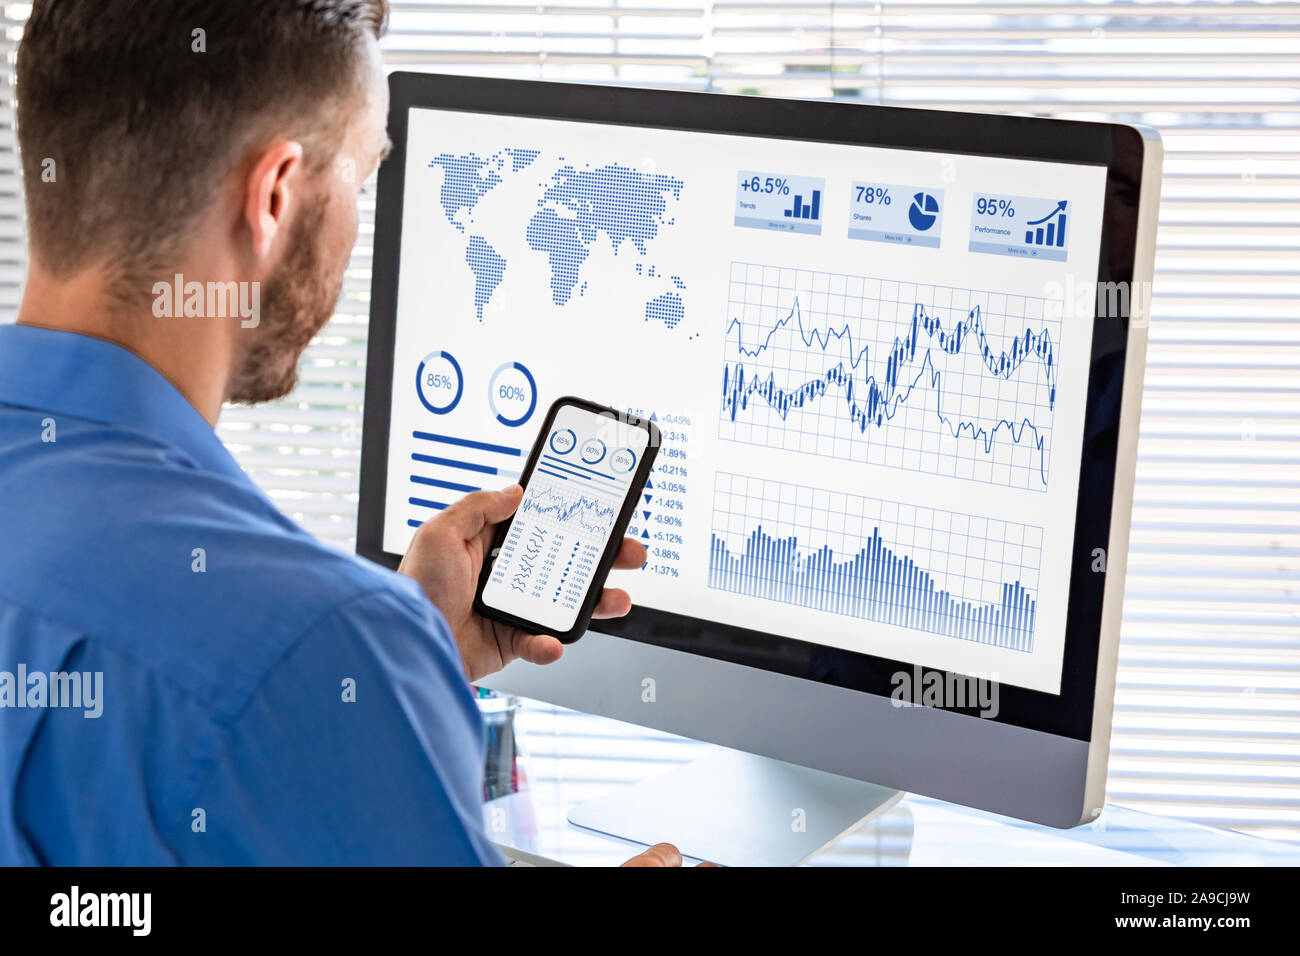 Analista lavora su business analytics dashboard per gli investimenti finanziari sul mercato stock exchange, analizzare le metriche e KPI (Key Performance indicato Foto Stock